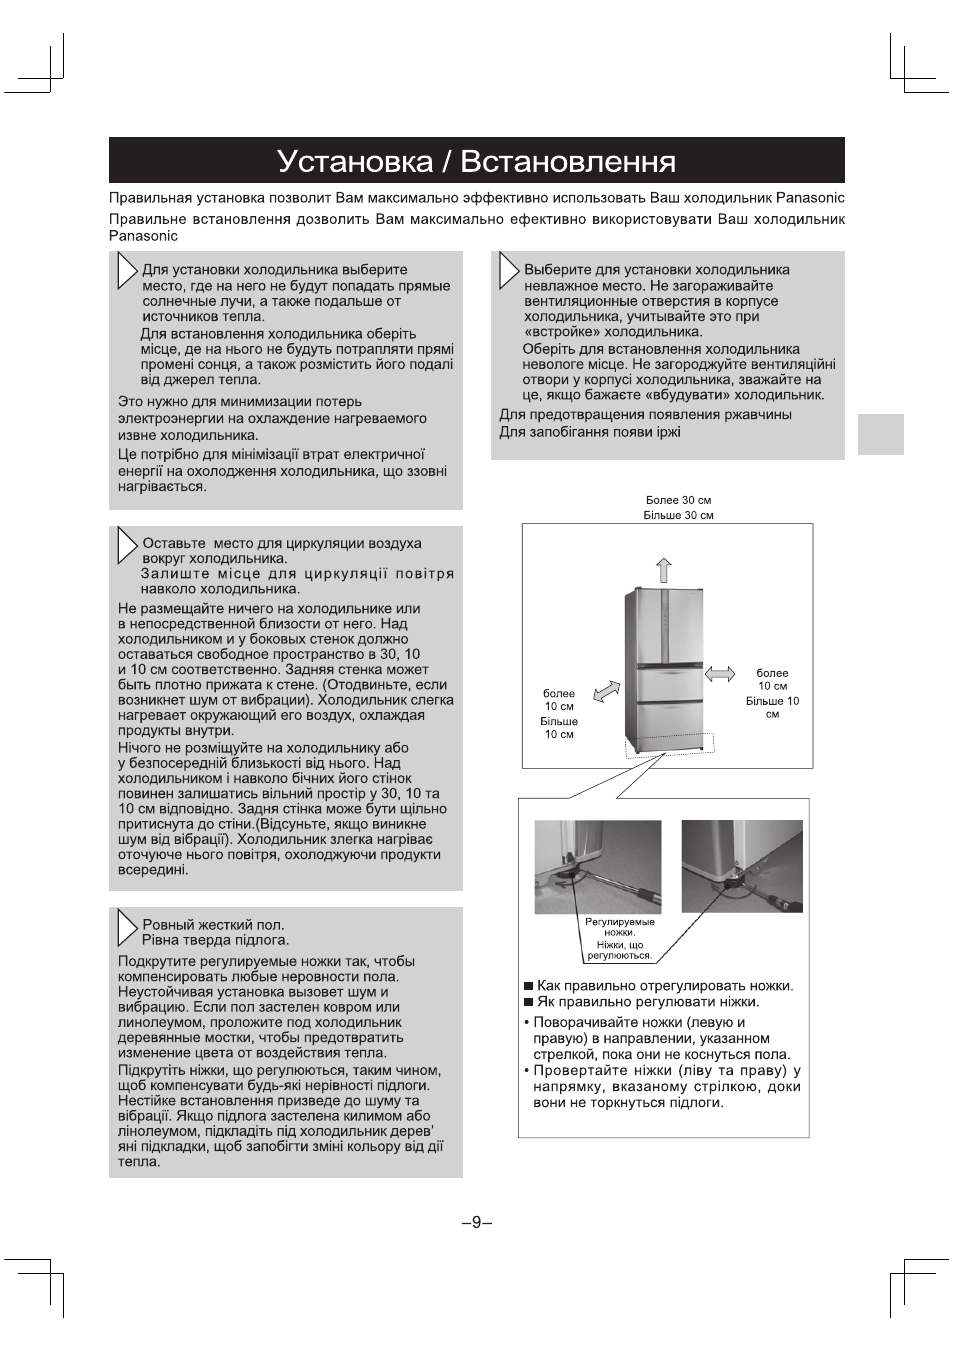 Установка / встановлення | Инструкция по эксплуатации Panasonic NR-D511 | Страница 9 / 32